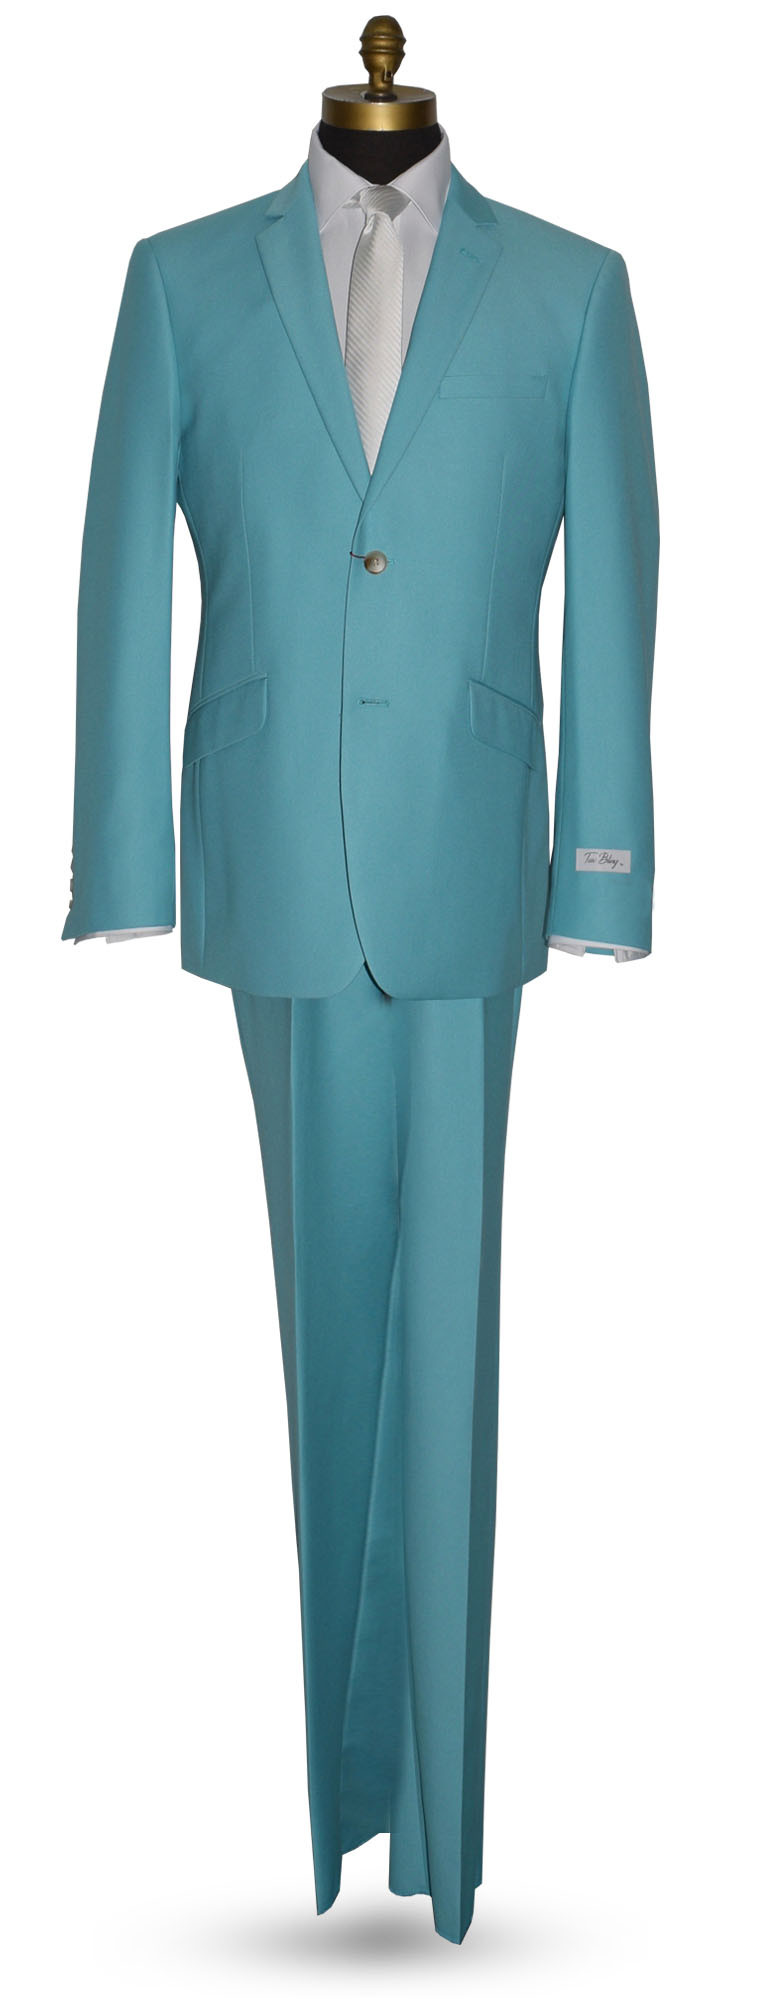 Men's Mediterranean Blue Wedding Suit 